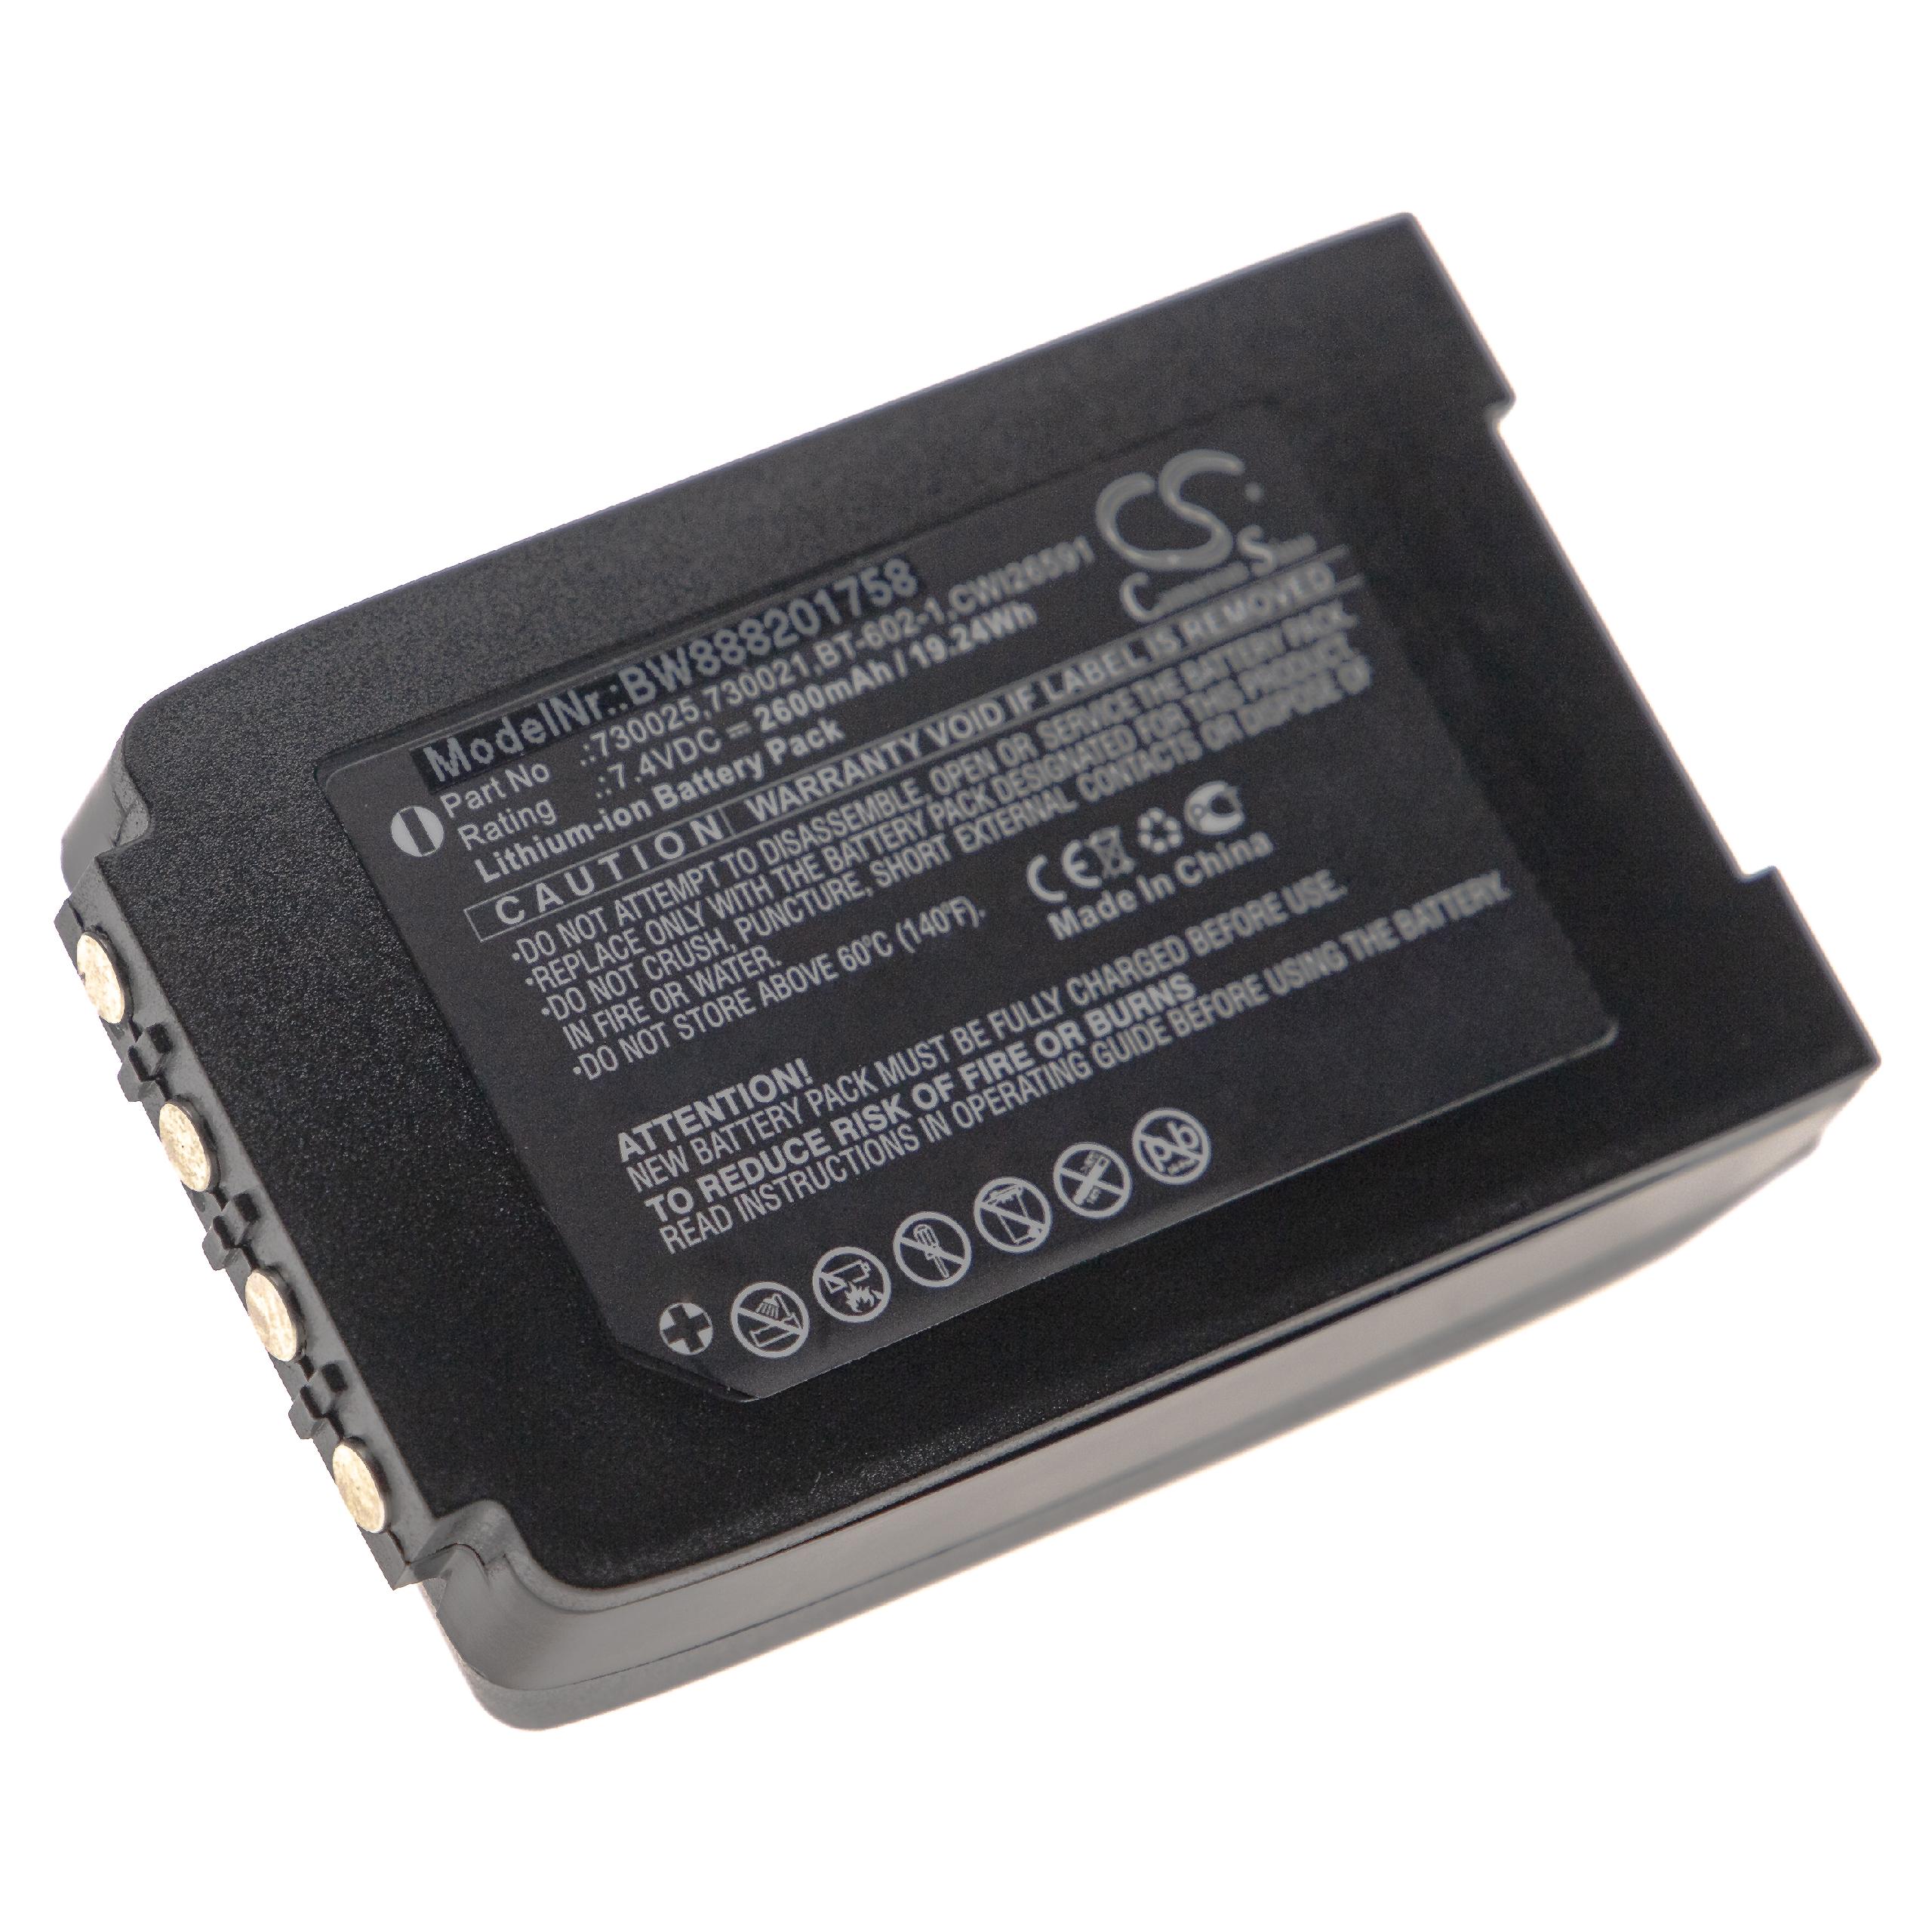 Batería reemplaza VoCollect 730021, 730025 para radio, walkie-talkie Vocollect - 2600 mAh 7,4 V Li-Ion